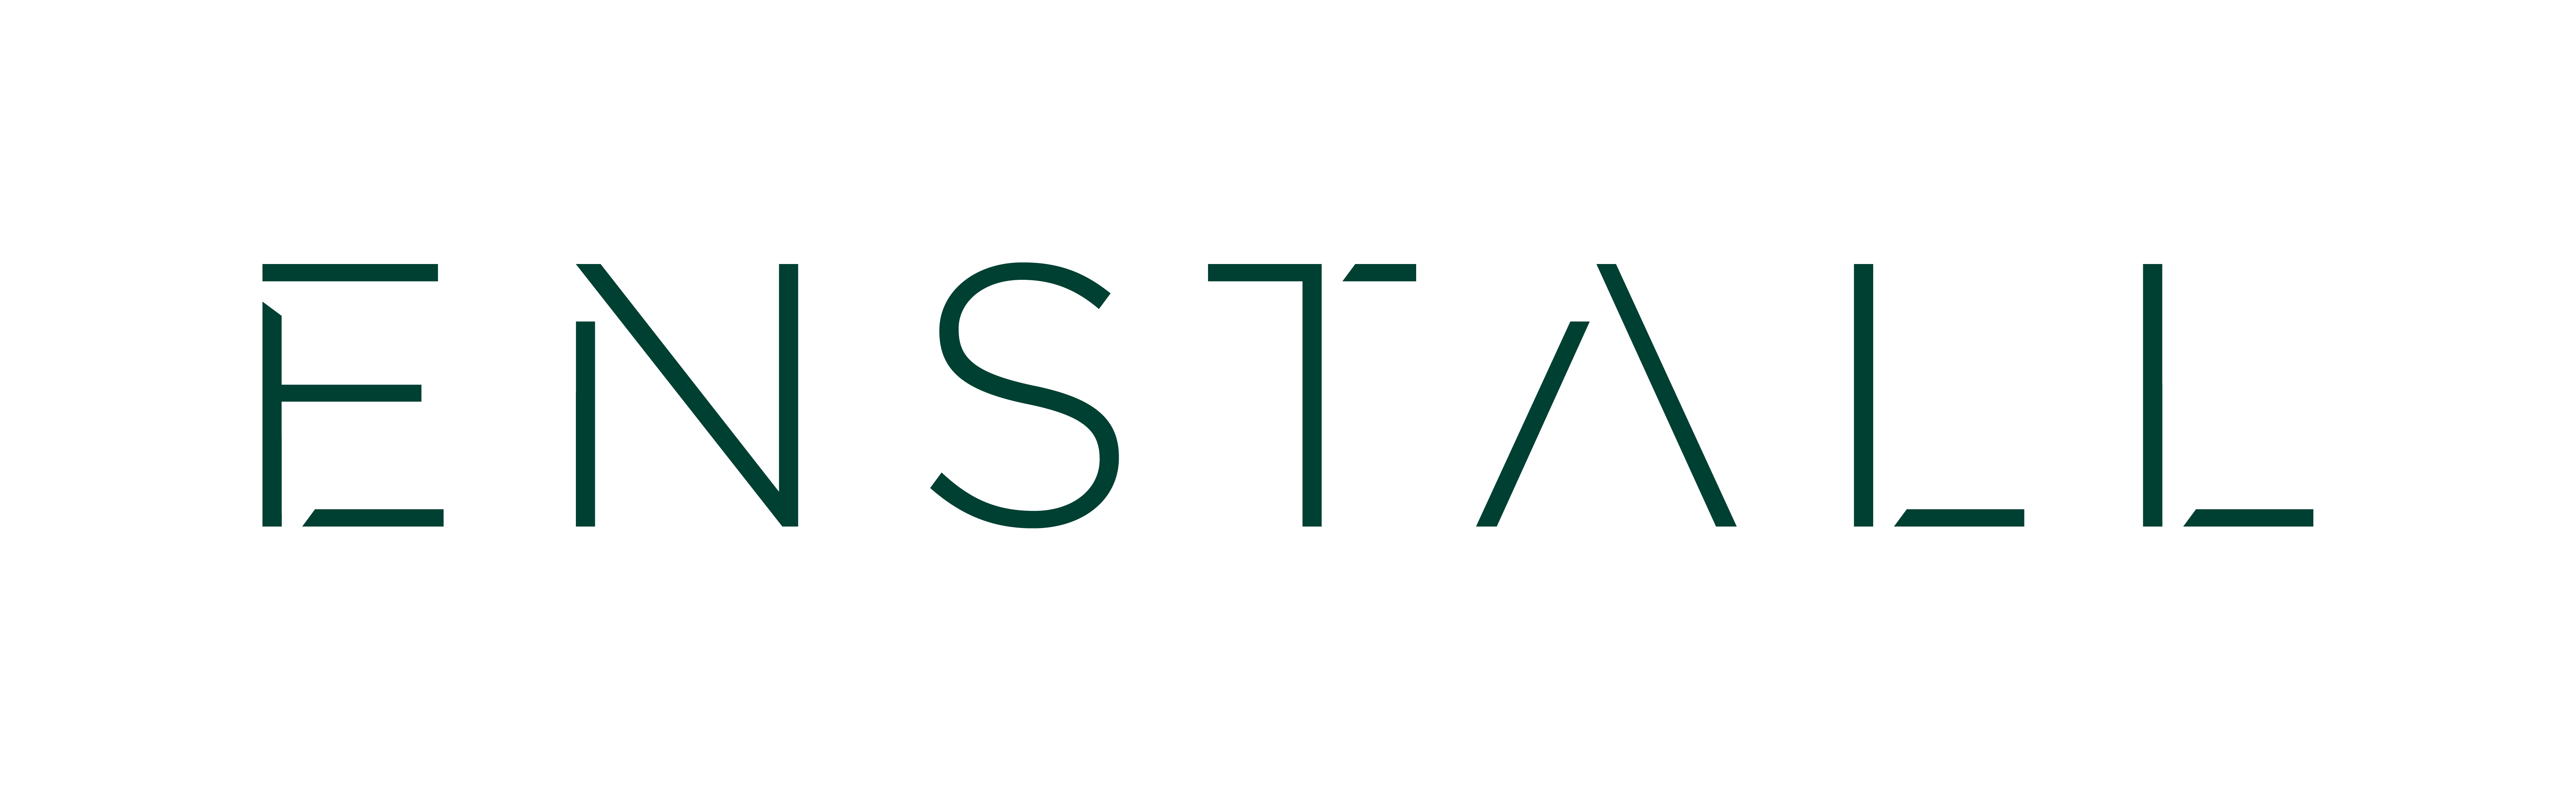 SolarAPP+™ Partner - ENSTALL logo